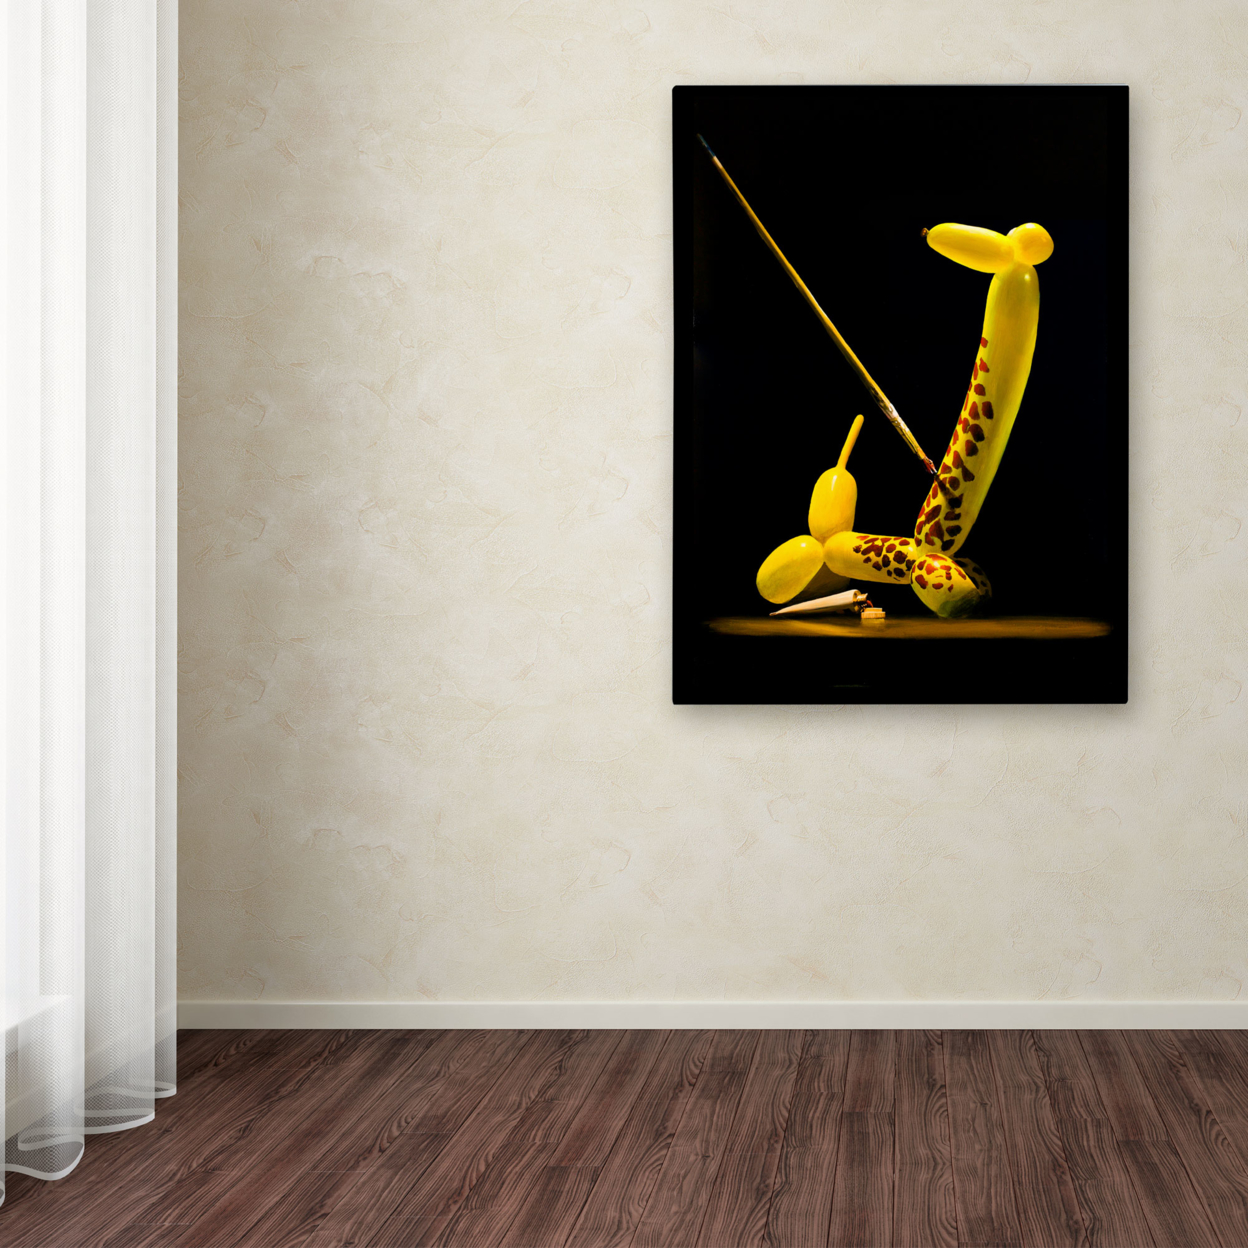 Roderick Stevens 'Balloon Giraffe' Canvas Art 18 X 24